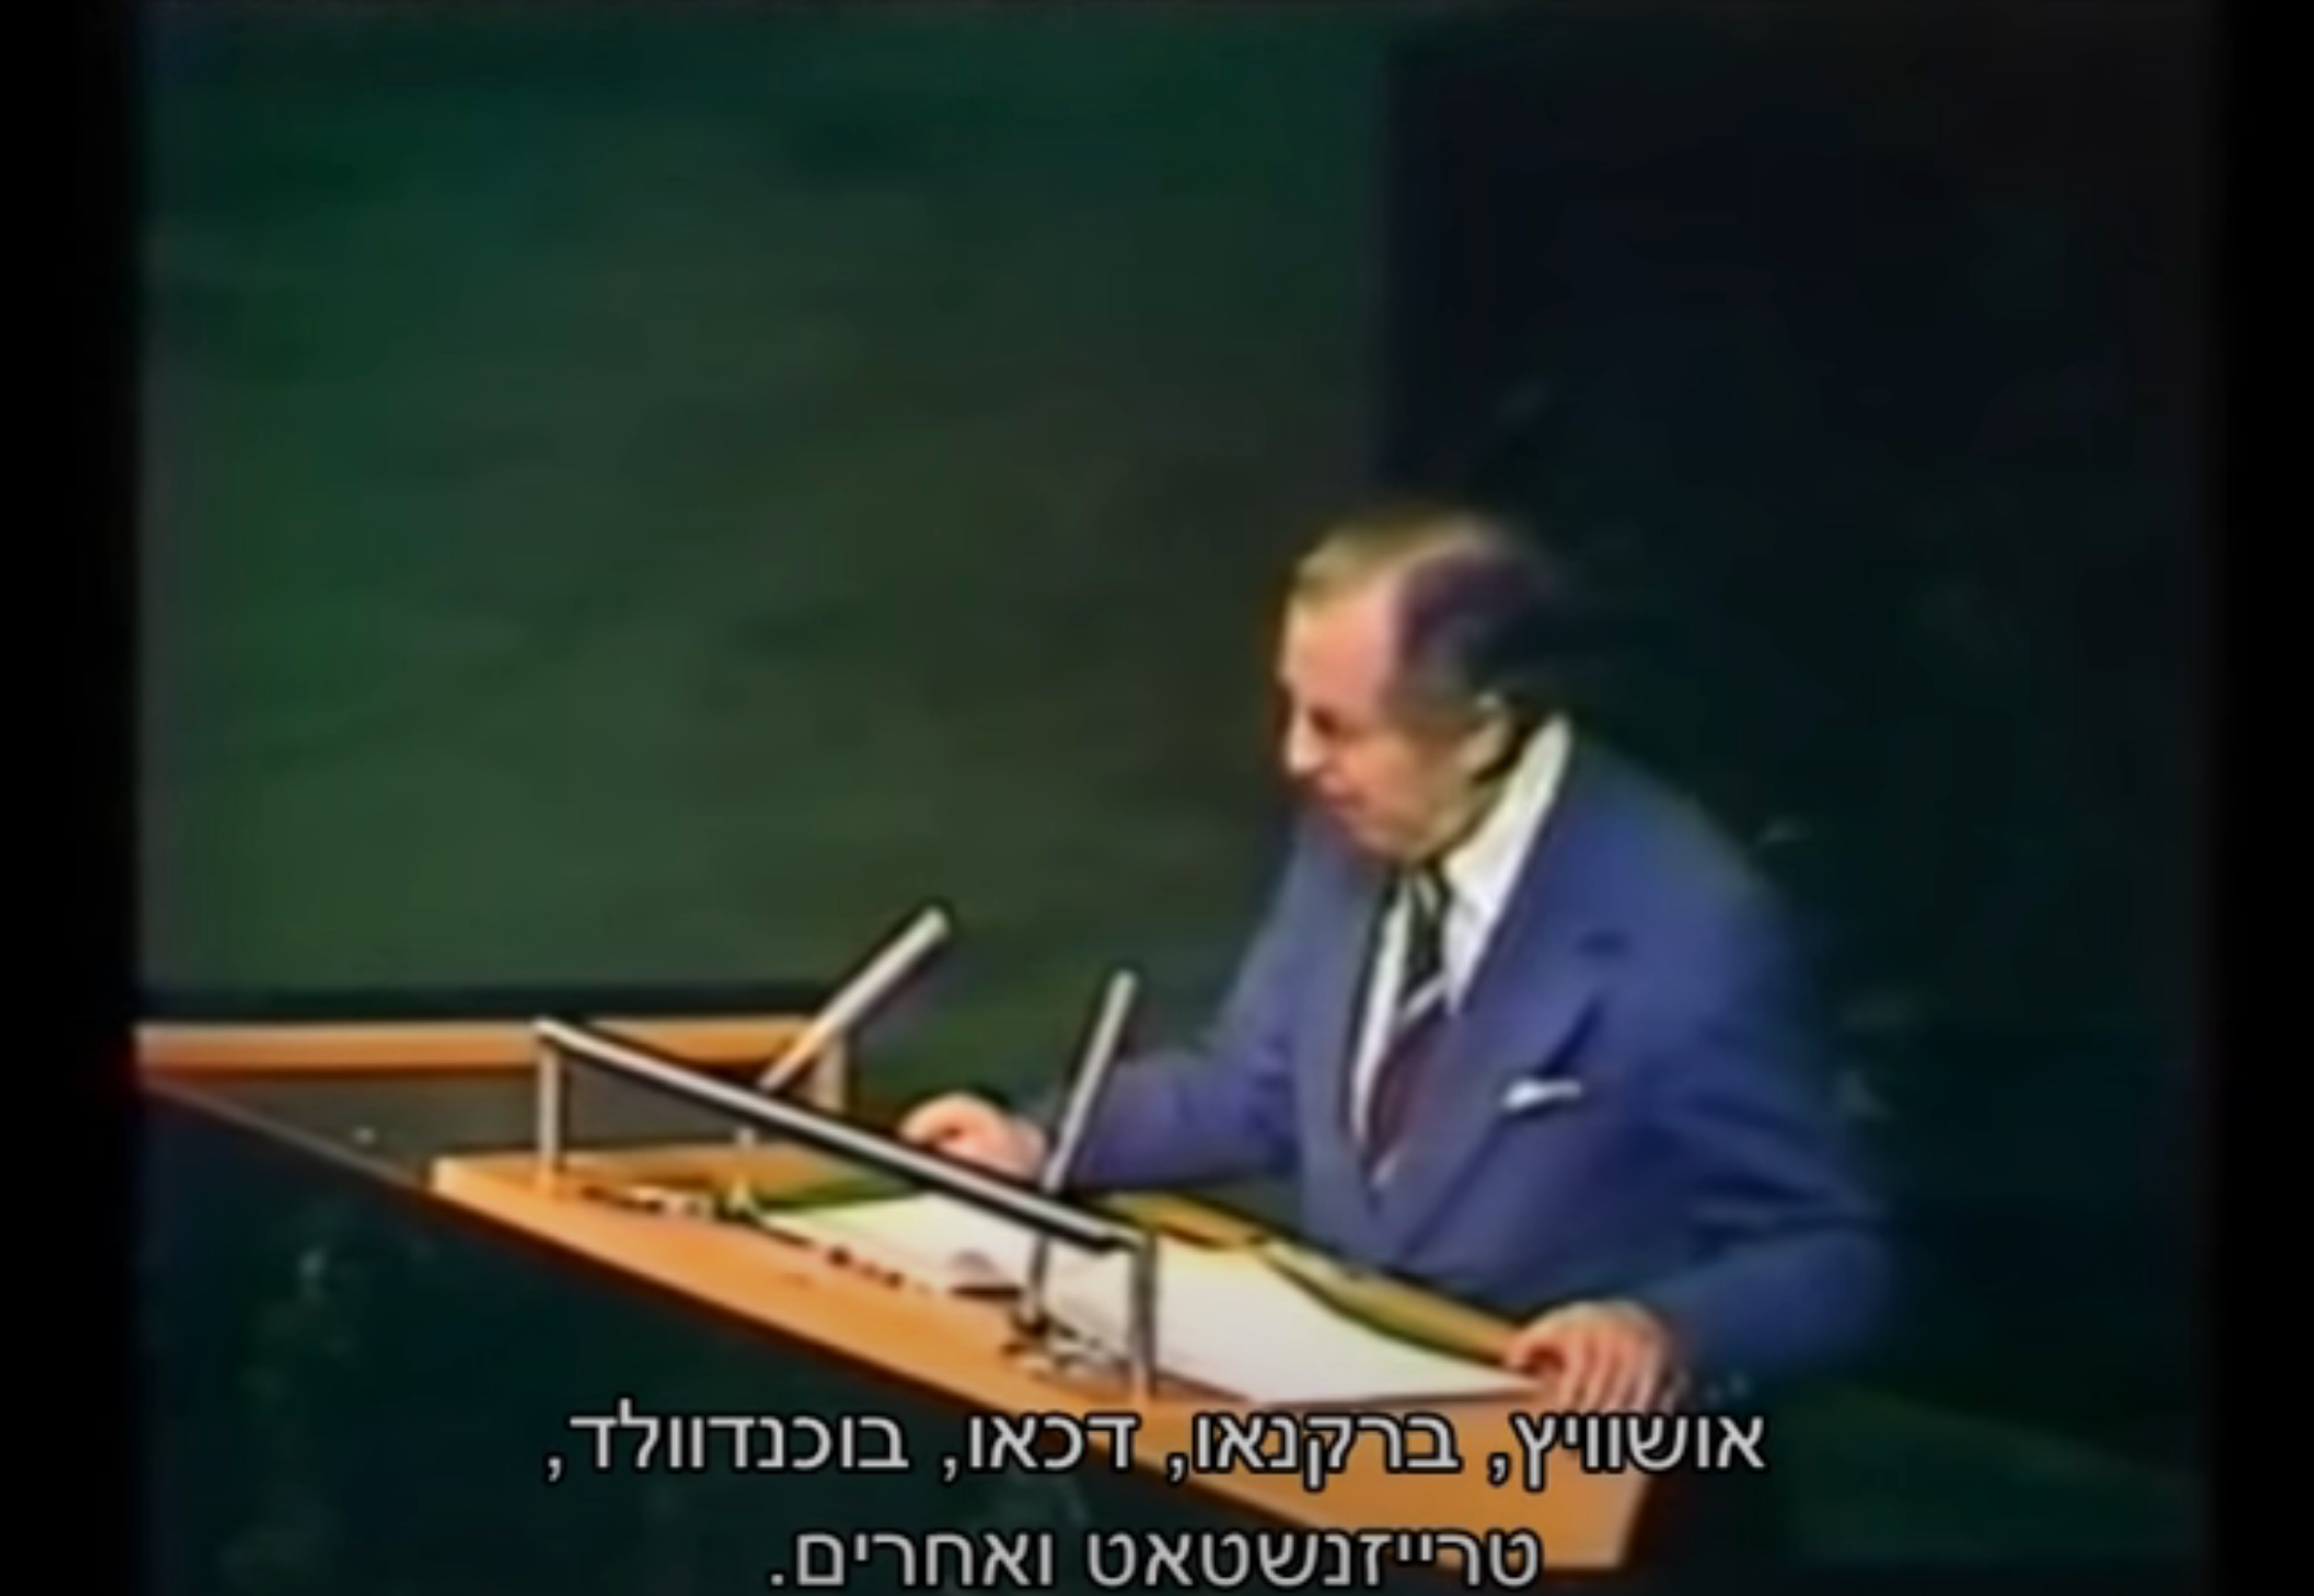 עיקרי נאומו ההיסטורי בעצרת האו”ם עם כתוביות בעברית